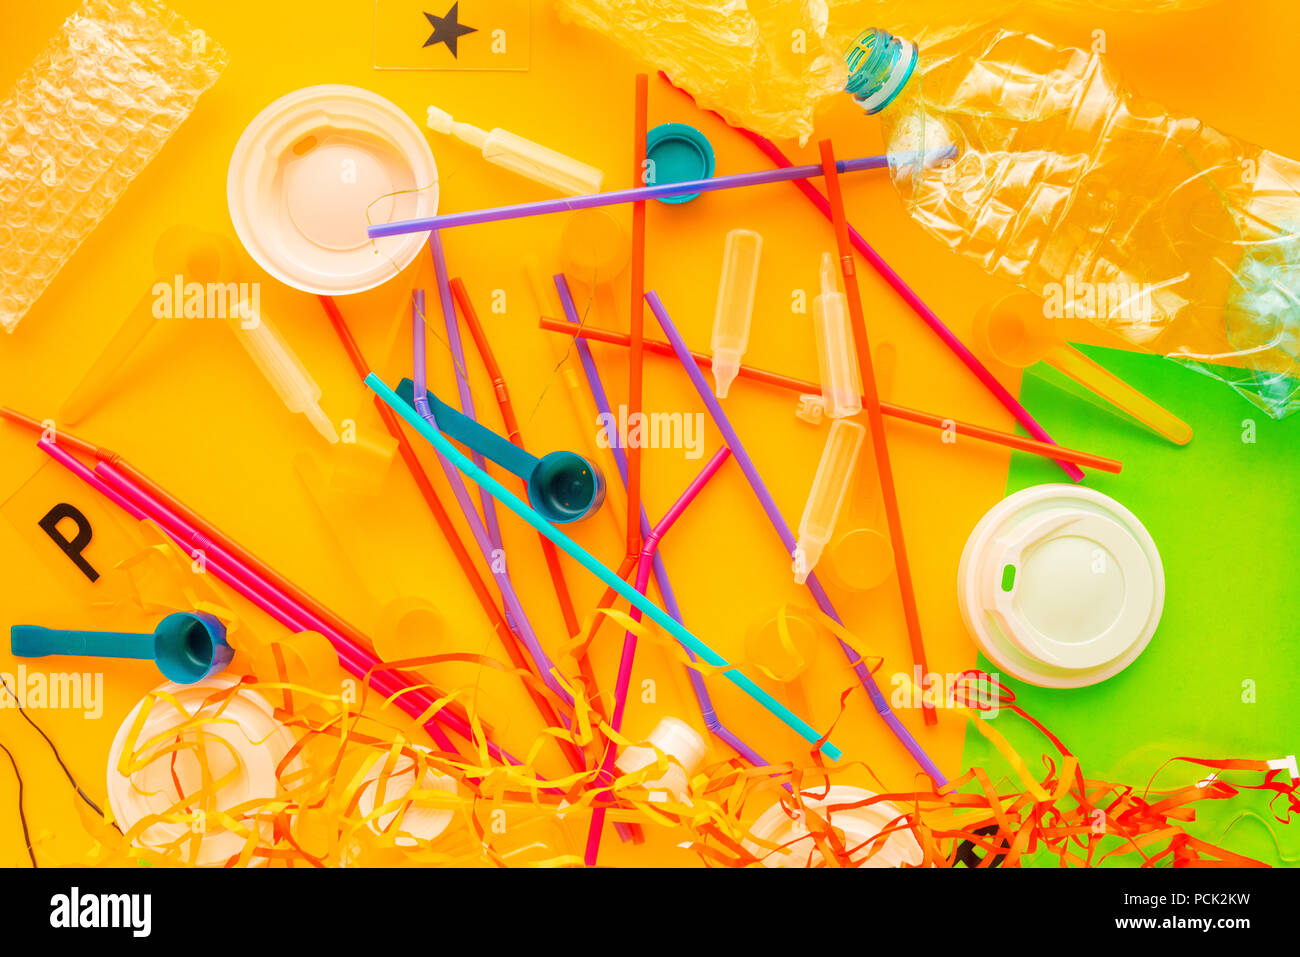 Déchets et ordures en plastique coloré pile, conceptual image de la pollution de l'environnement et à la consommation Banque D'Images